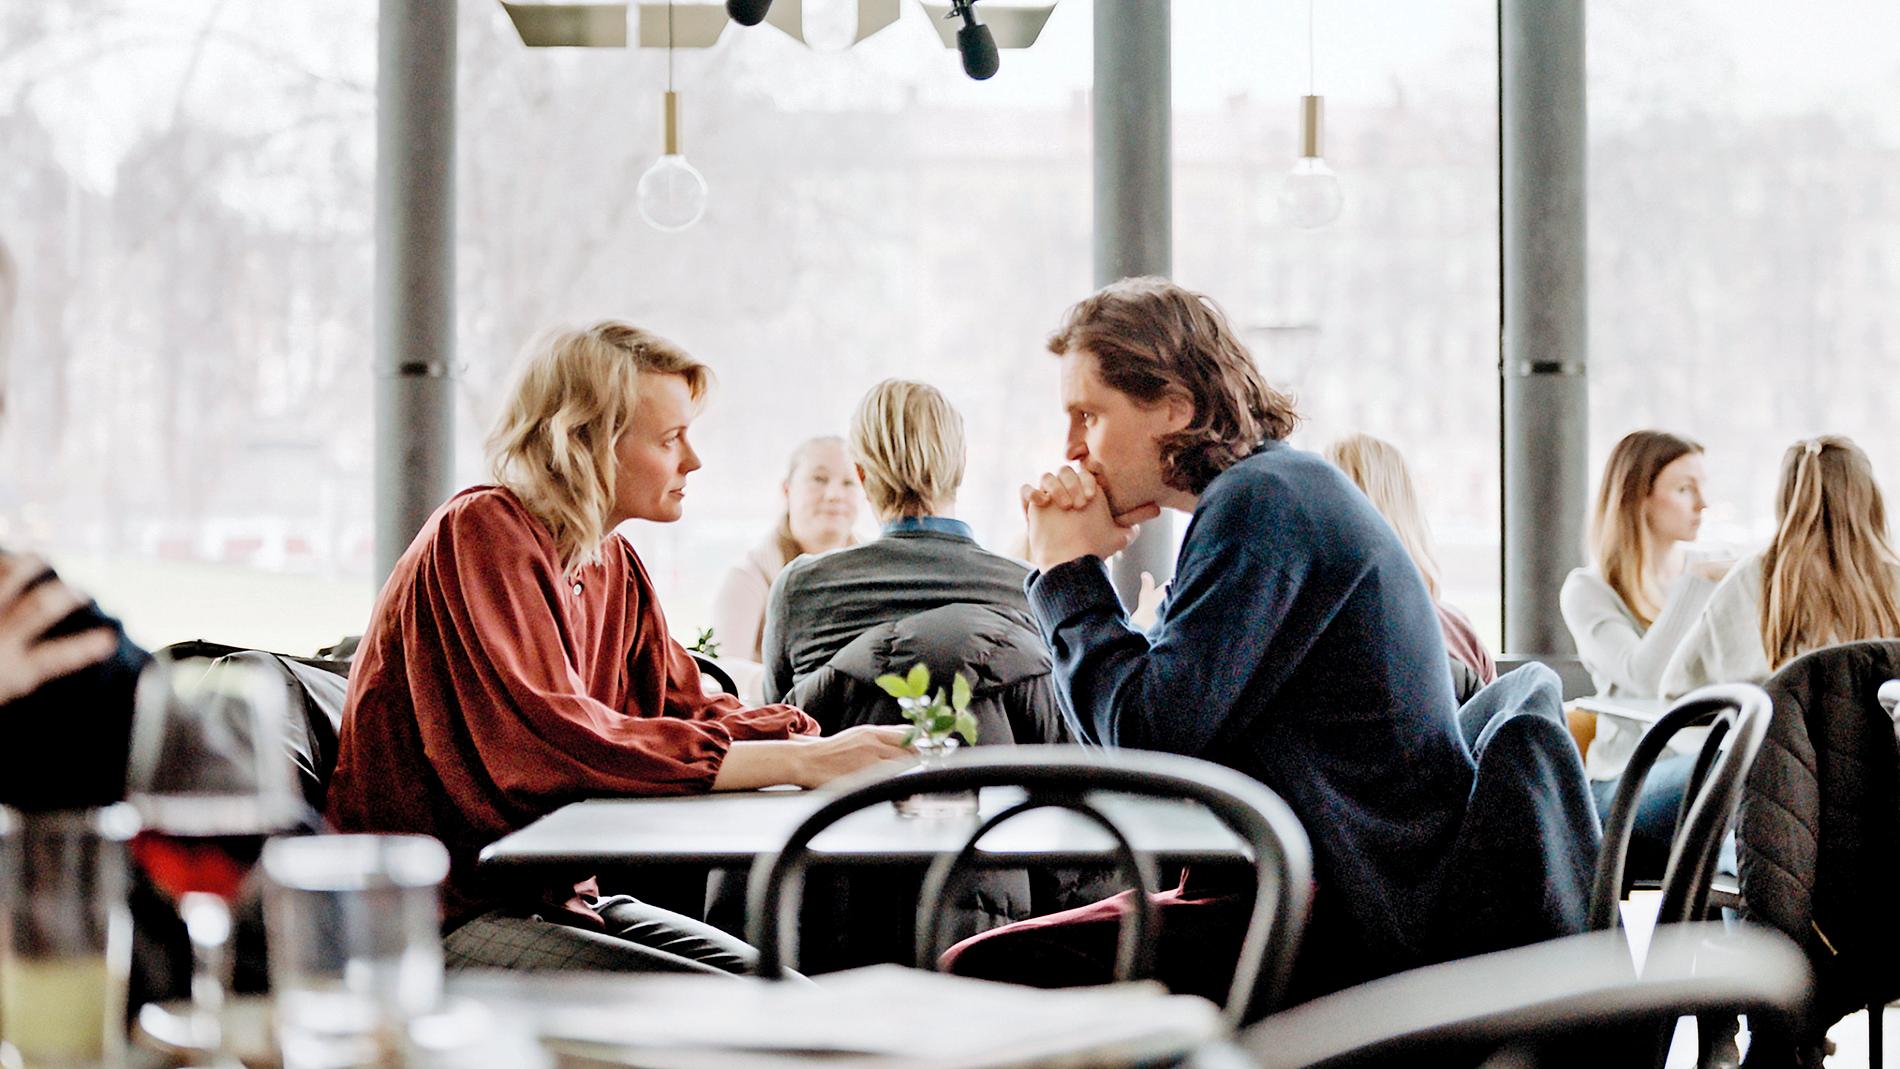 "Älska mig" av Josephine Bornebusch, här med Sverrir Gudnason, fick nyligen premiär på Viaplay, som ska producera minst 20 nordiska serier om året framöver. Pressbild.